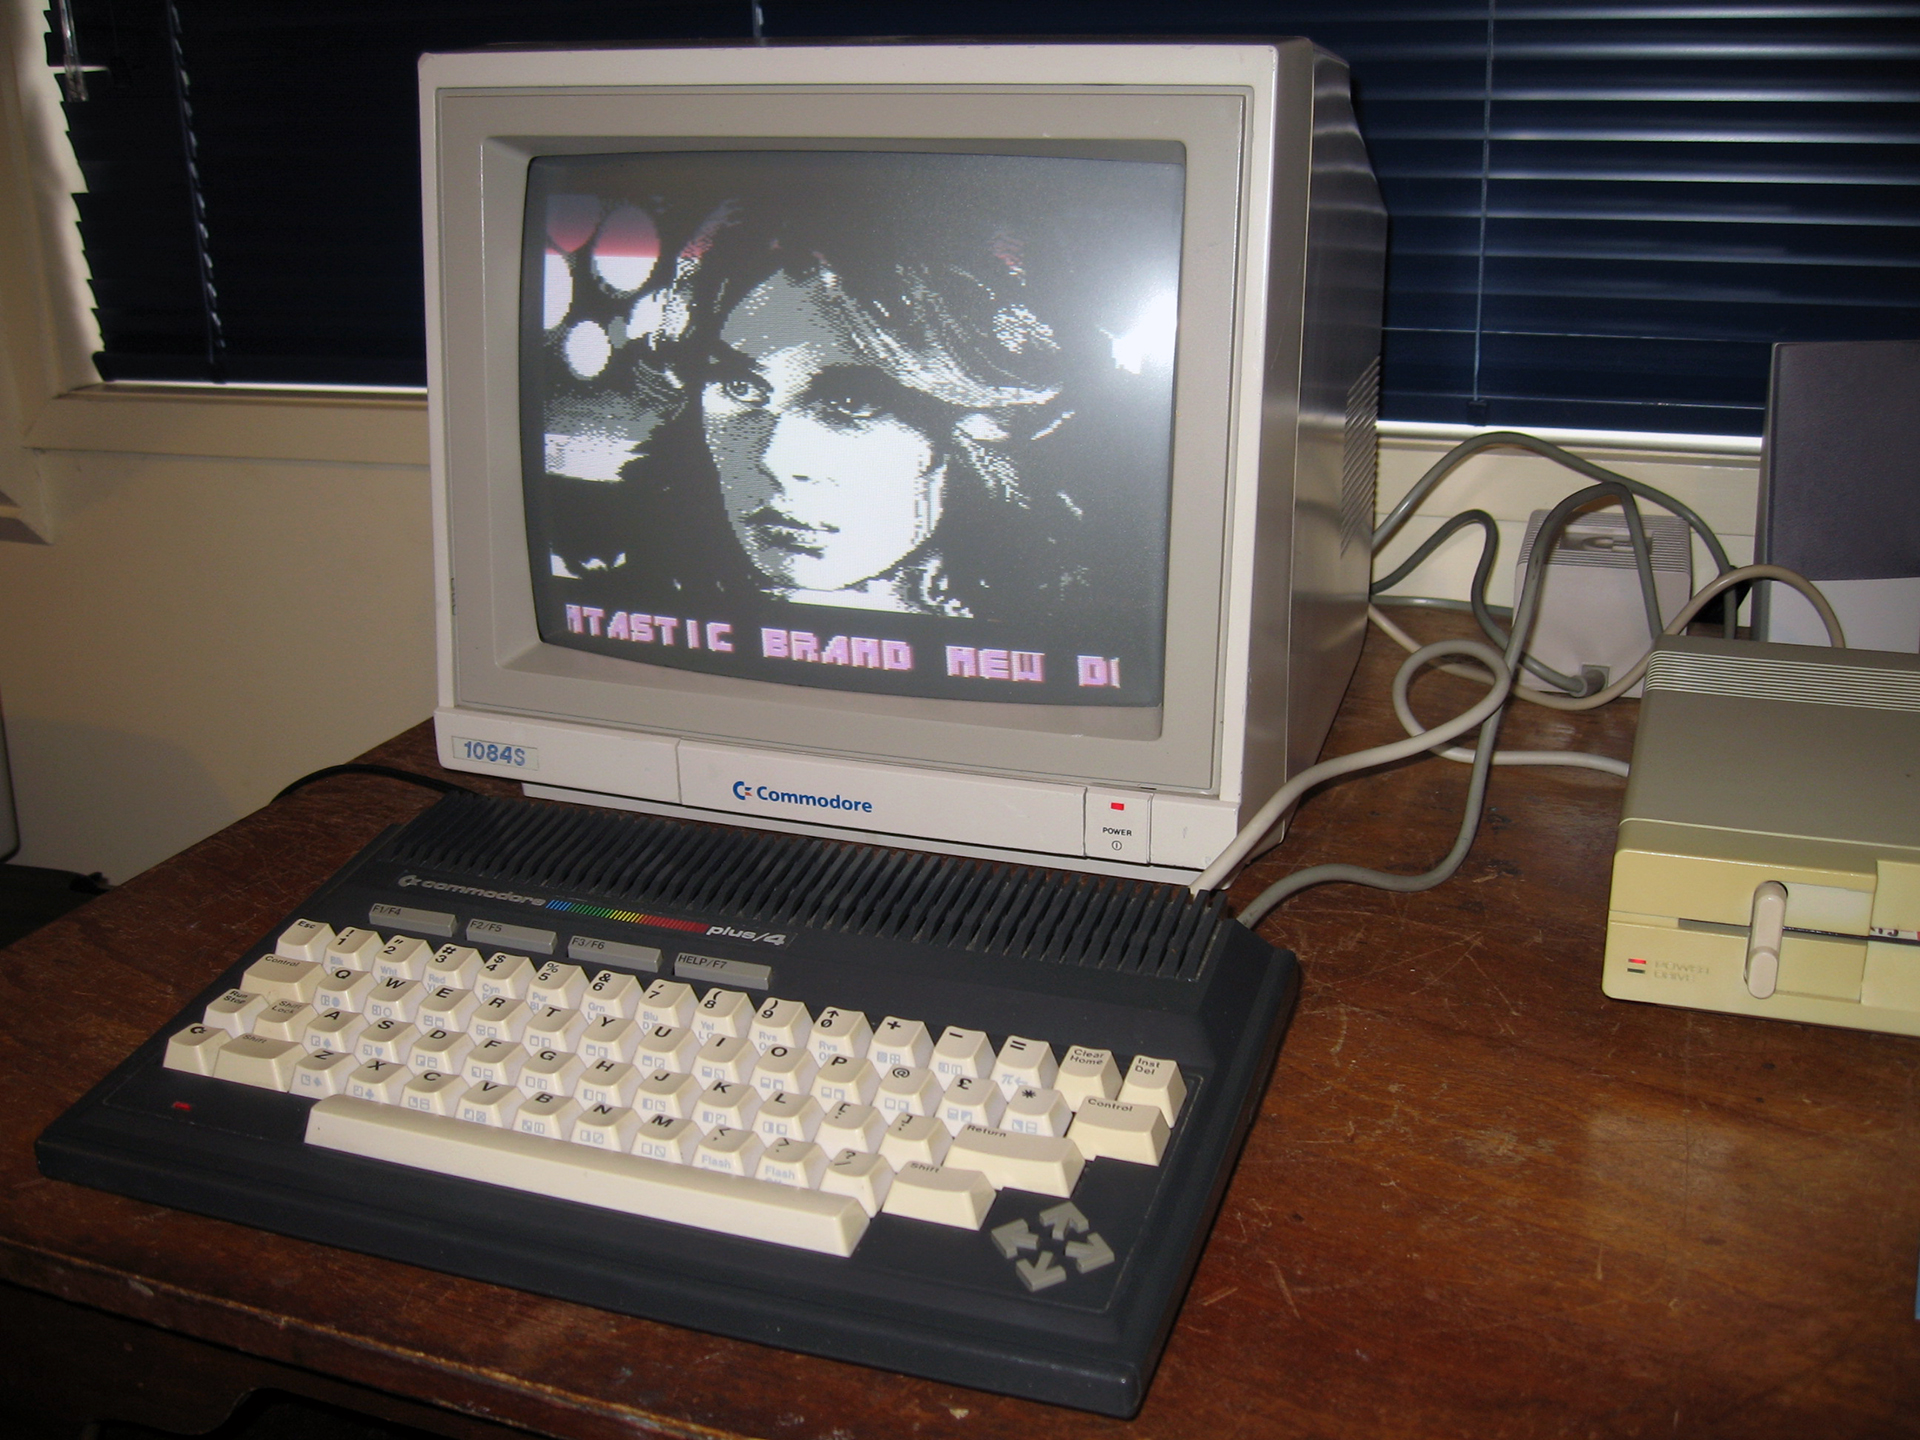 The Commodore 16 Commodore Plus/4